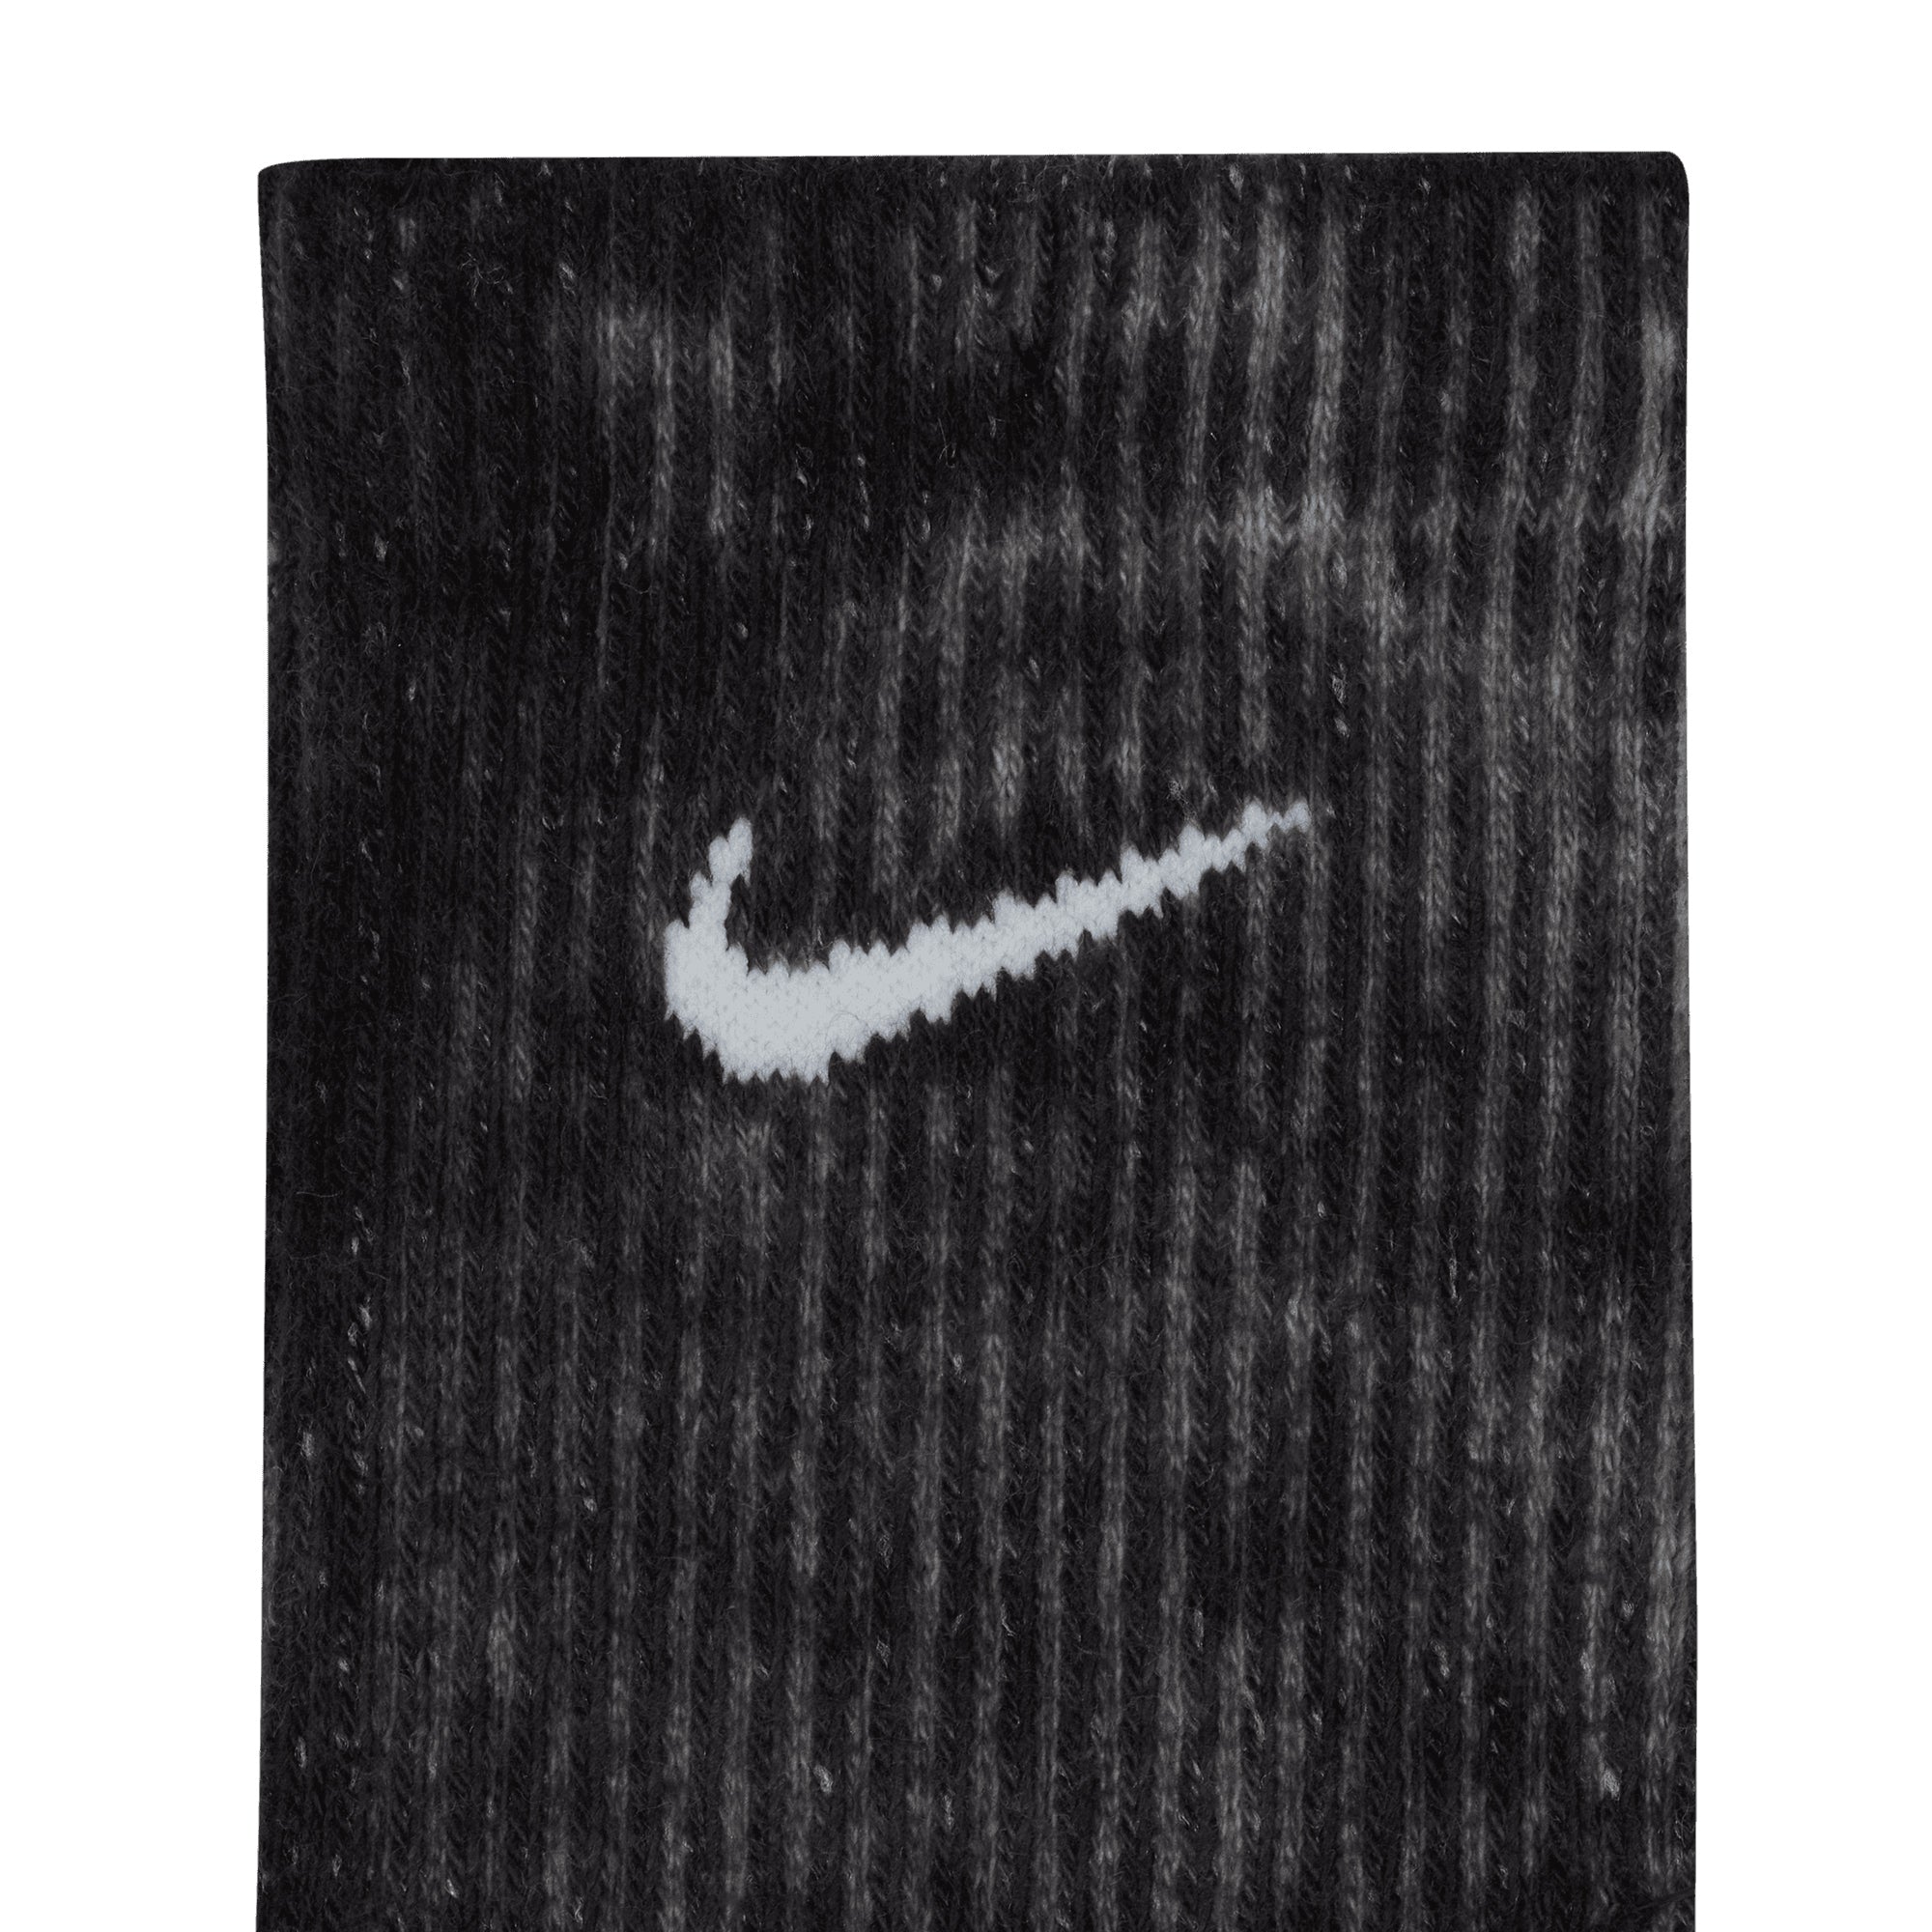 Nike Sportswear is